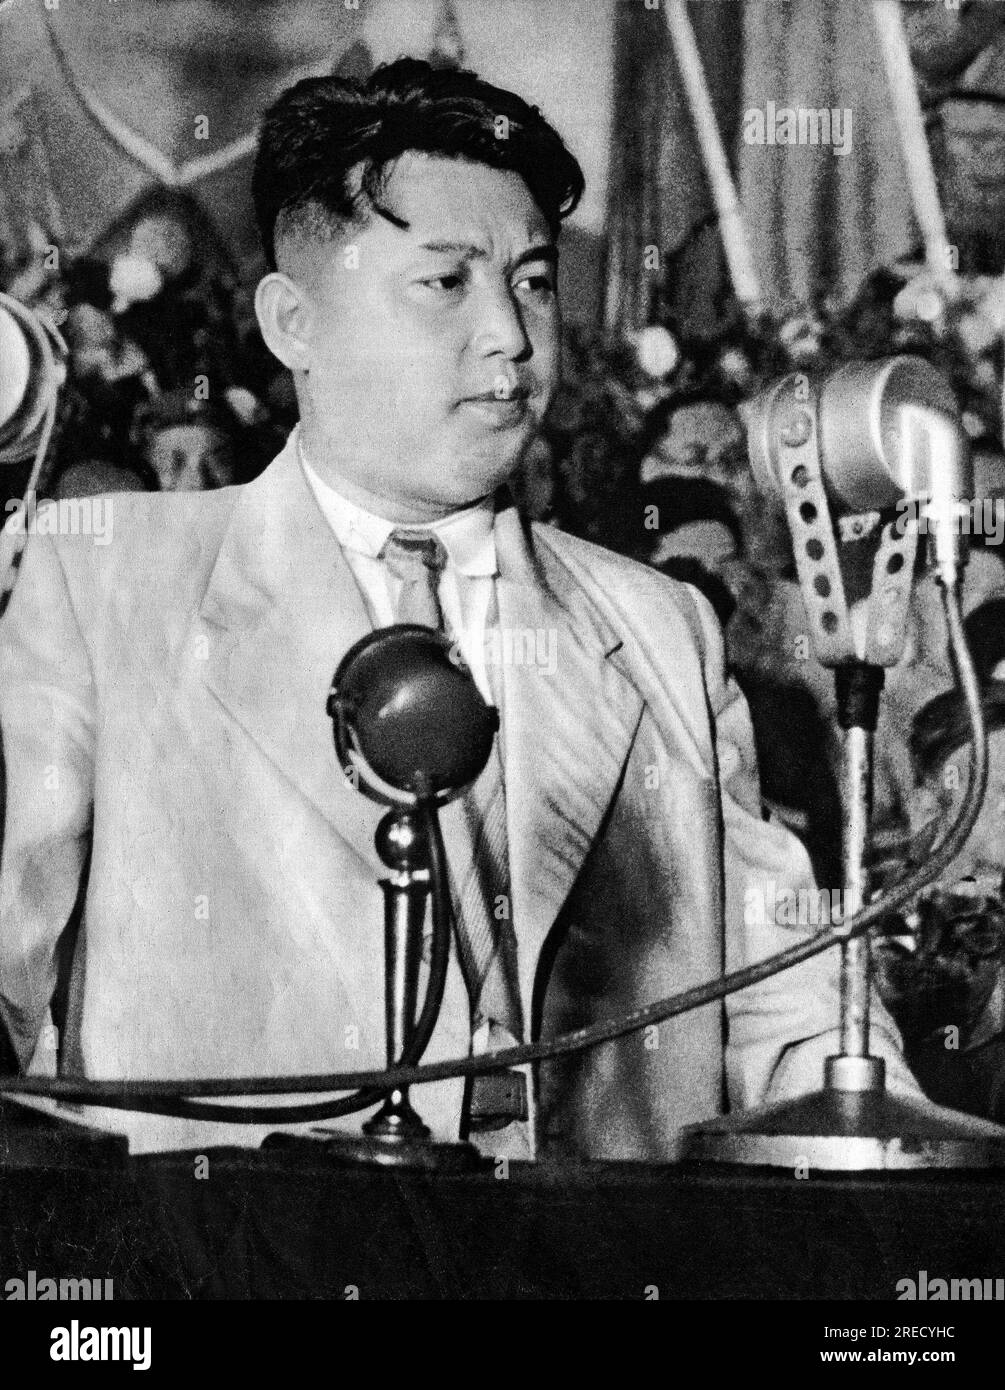 La Guerre de Coree (1950-1953), portrait de Kim il Sung (Kim il-sung) (1912-1994), homme d'etat et marechal nord coreen, en 1950, in 'la Guerre de Coree', Chine, 1959, coll. Selva (Ritratto di Kim il Sung, presidente della Repubblica Popolare Democratica di Corea (Corea del Nord), nel 1950, da "Guerra di Corea", Cina 1959) Foto Stock